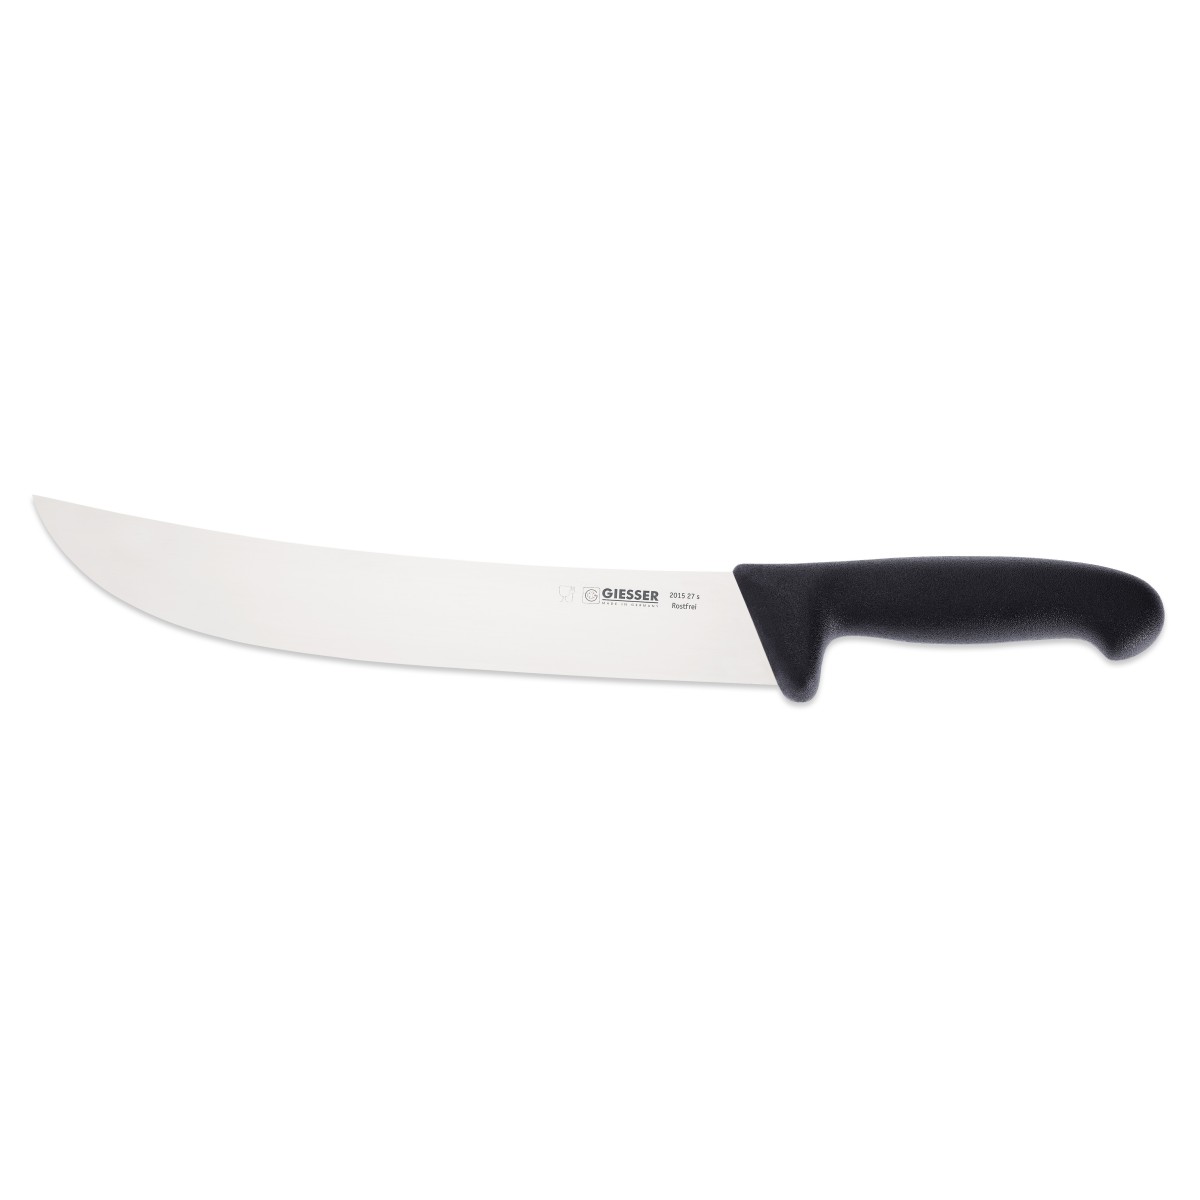 KNIFE GIESSER STEAK CURVED 27cm BLACK